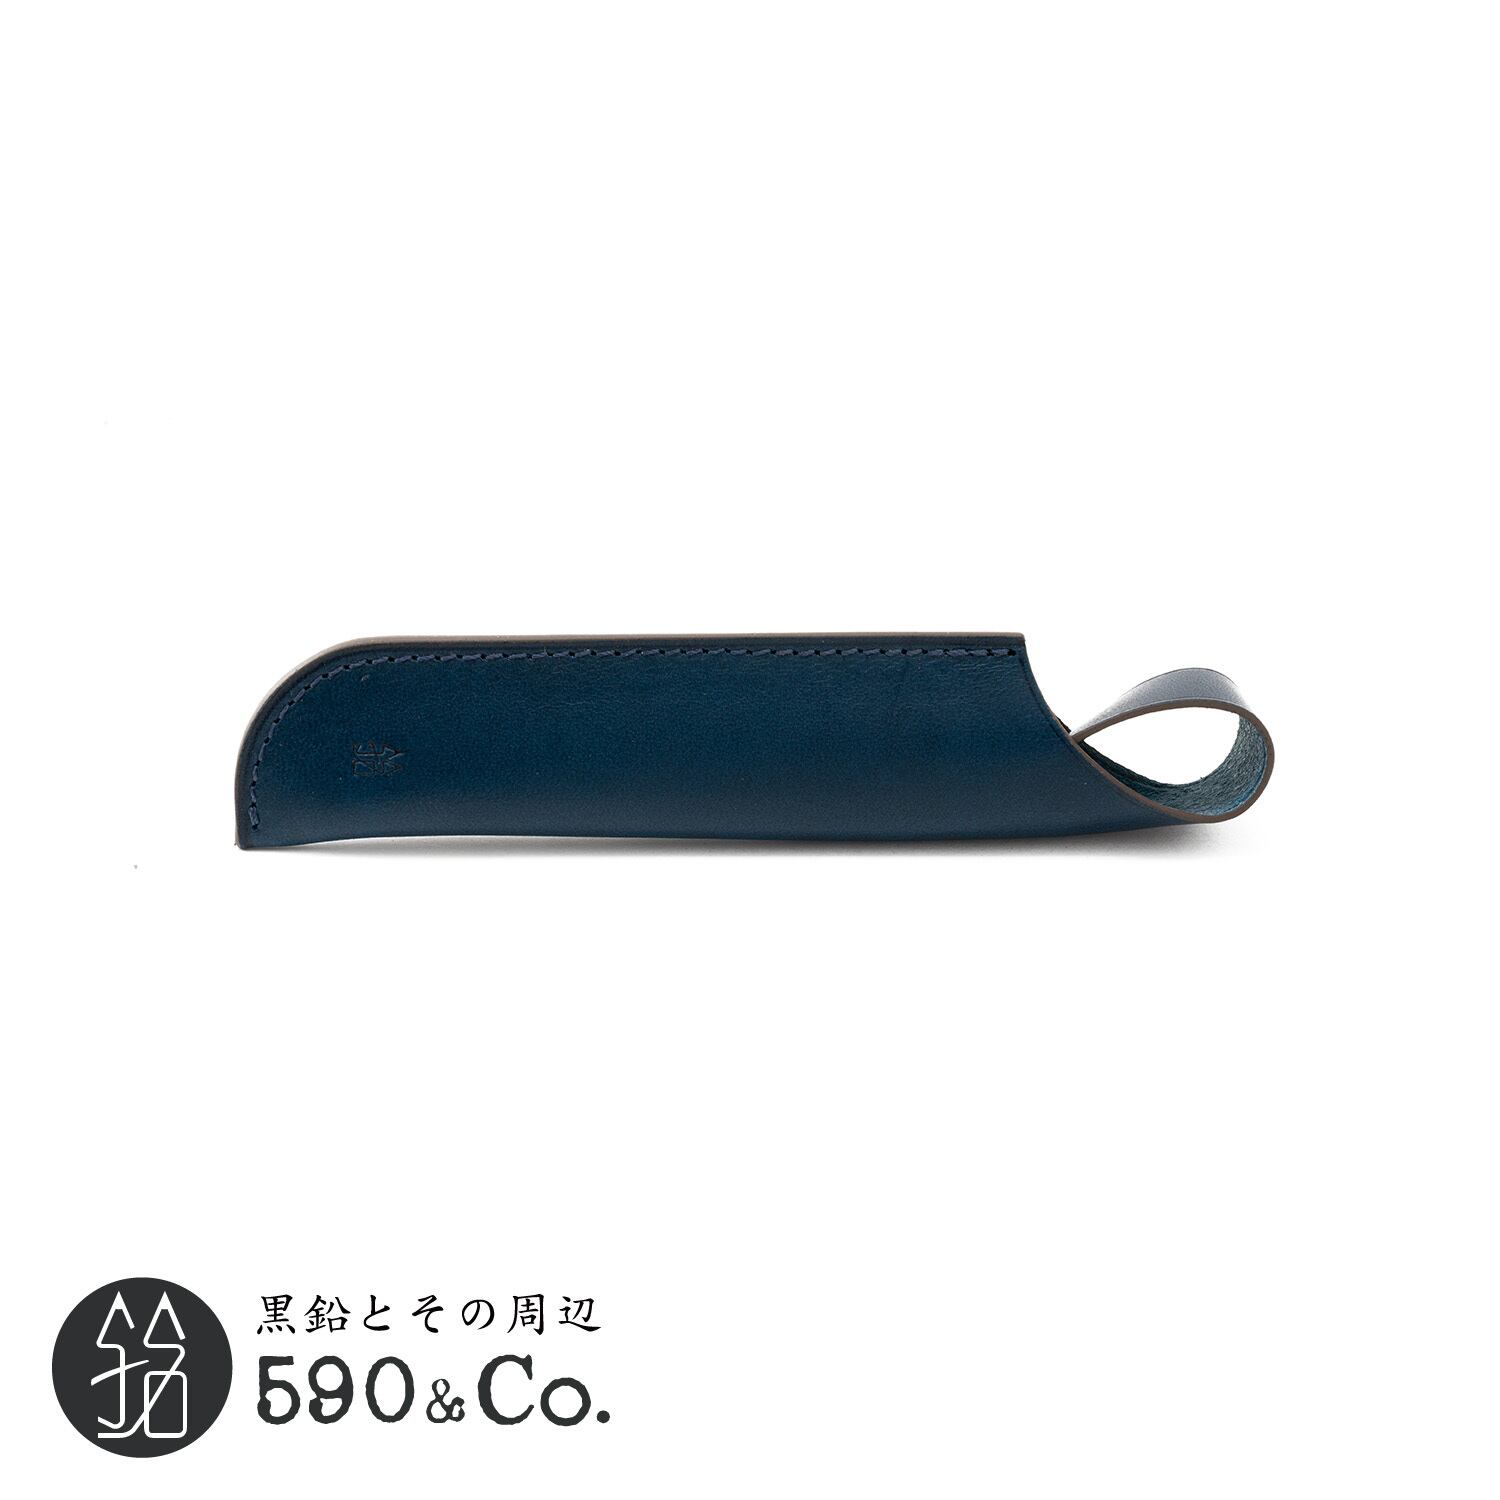 【QUI】ショートペンシース・ブッテーロ (ブルー) 590Co.